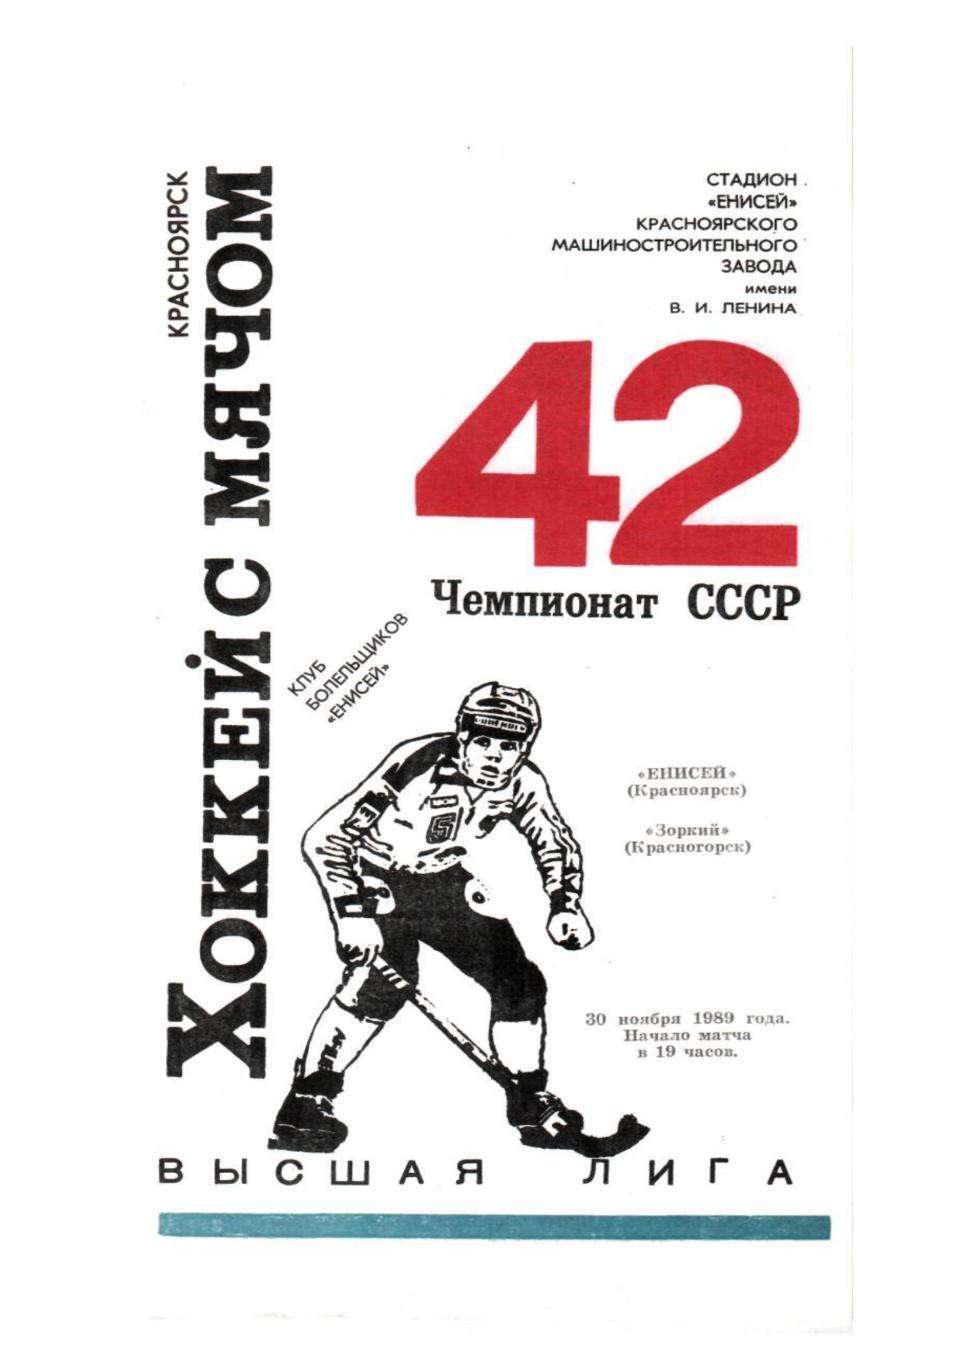 Хоккей с мячом-89. Енисей (Красноярск) – Зоркий (Красногорск).